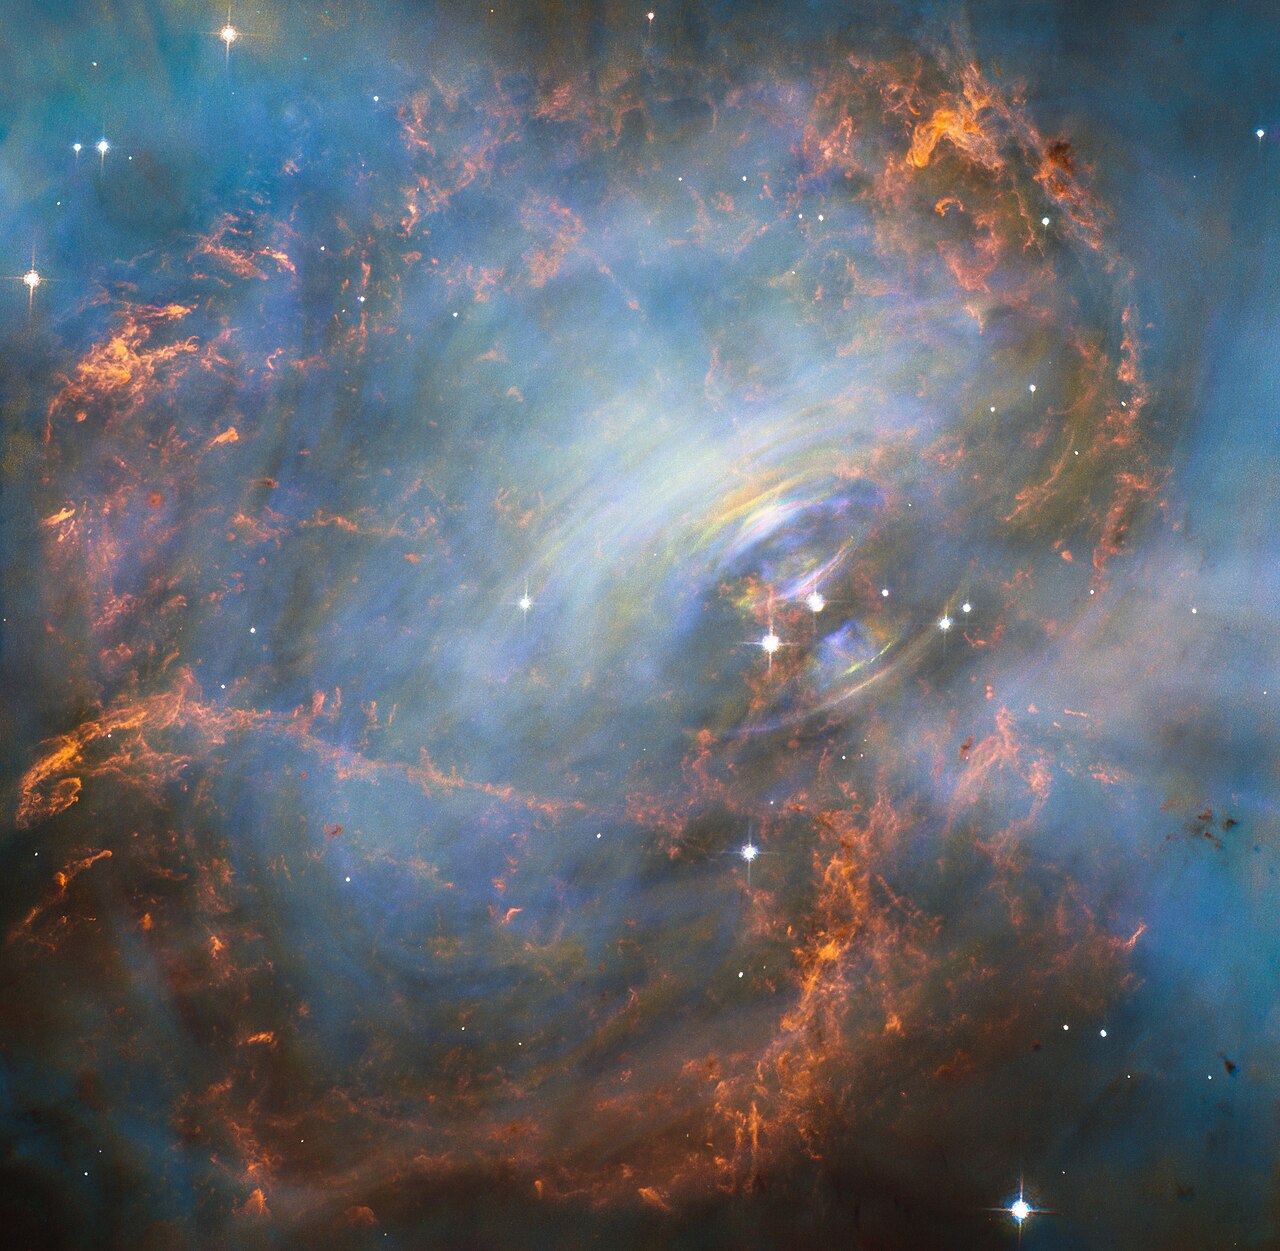 Source: Wikimedia Commons/ESA/Hubble